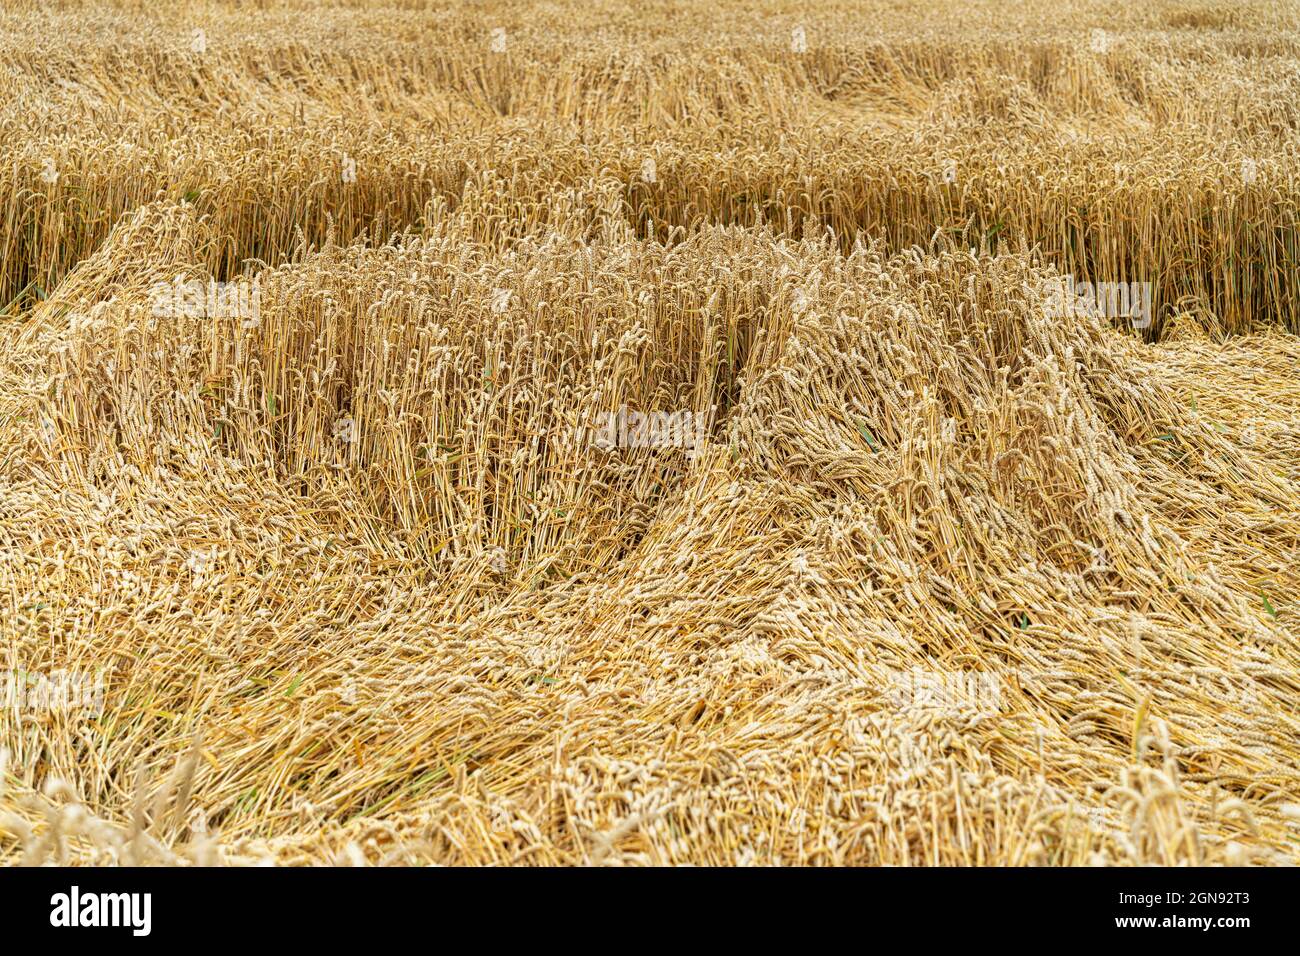 Cosechas de trigo dañadas en la granja Foto de stock